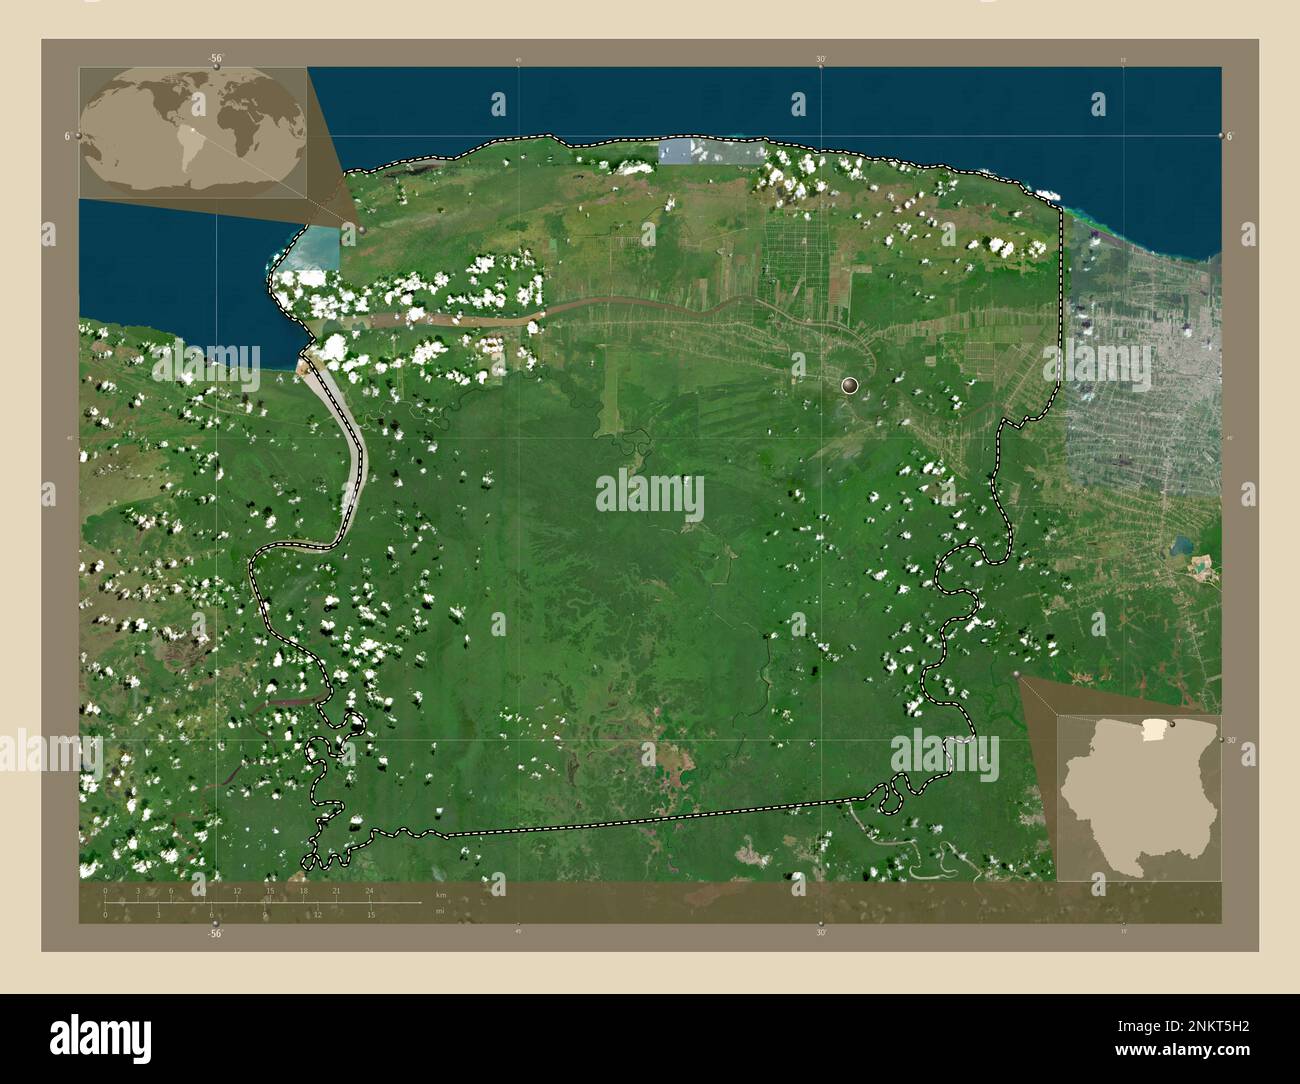 Saramacca, Bezirk Suriname. Hochauflösende Satellitenkarte. Eckkarten für zusätzliche Standorte Stockfoto